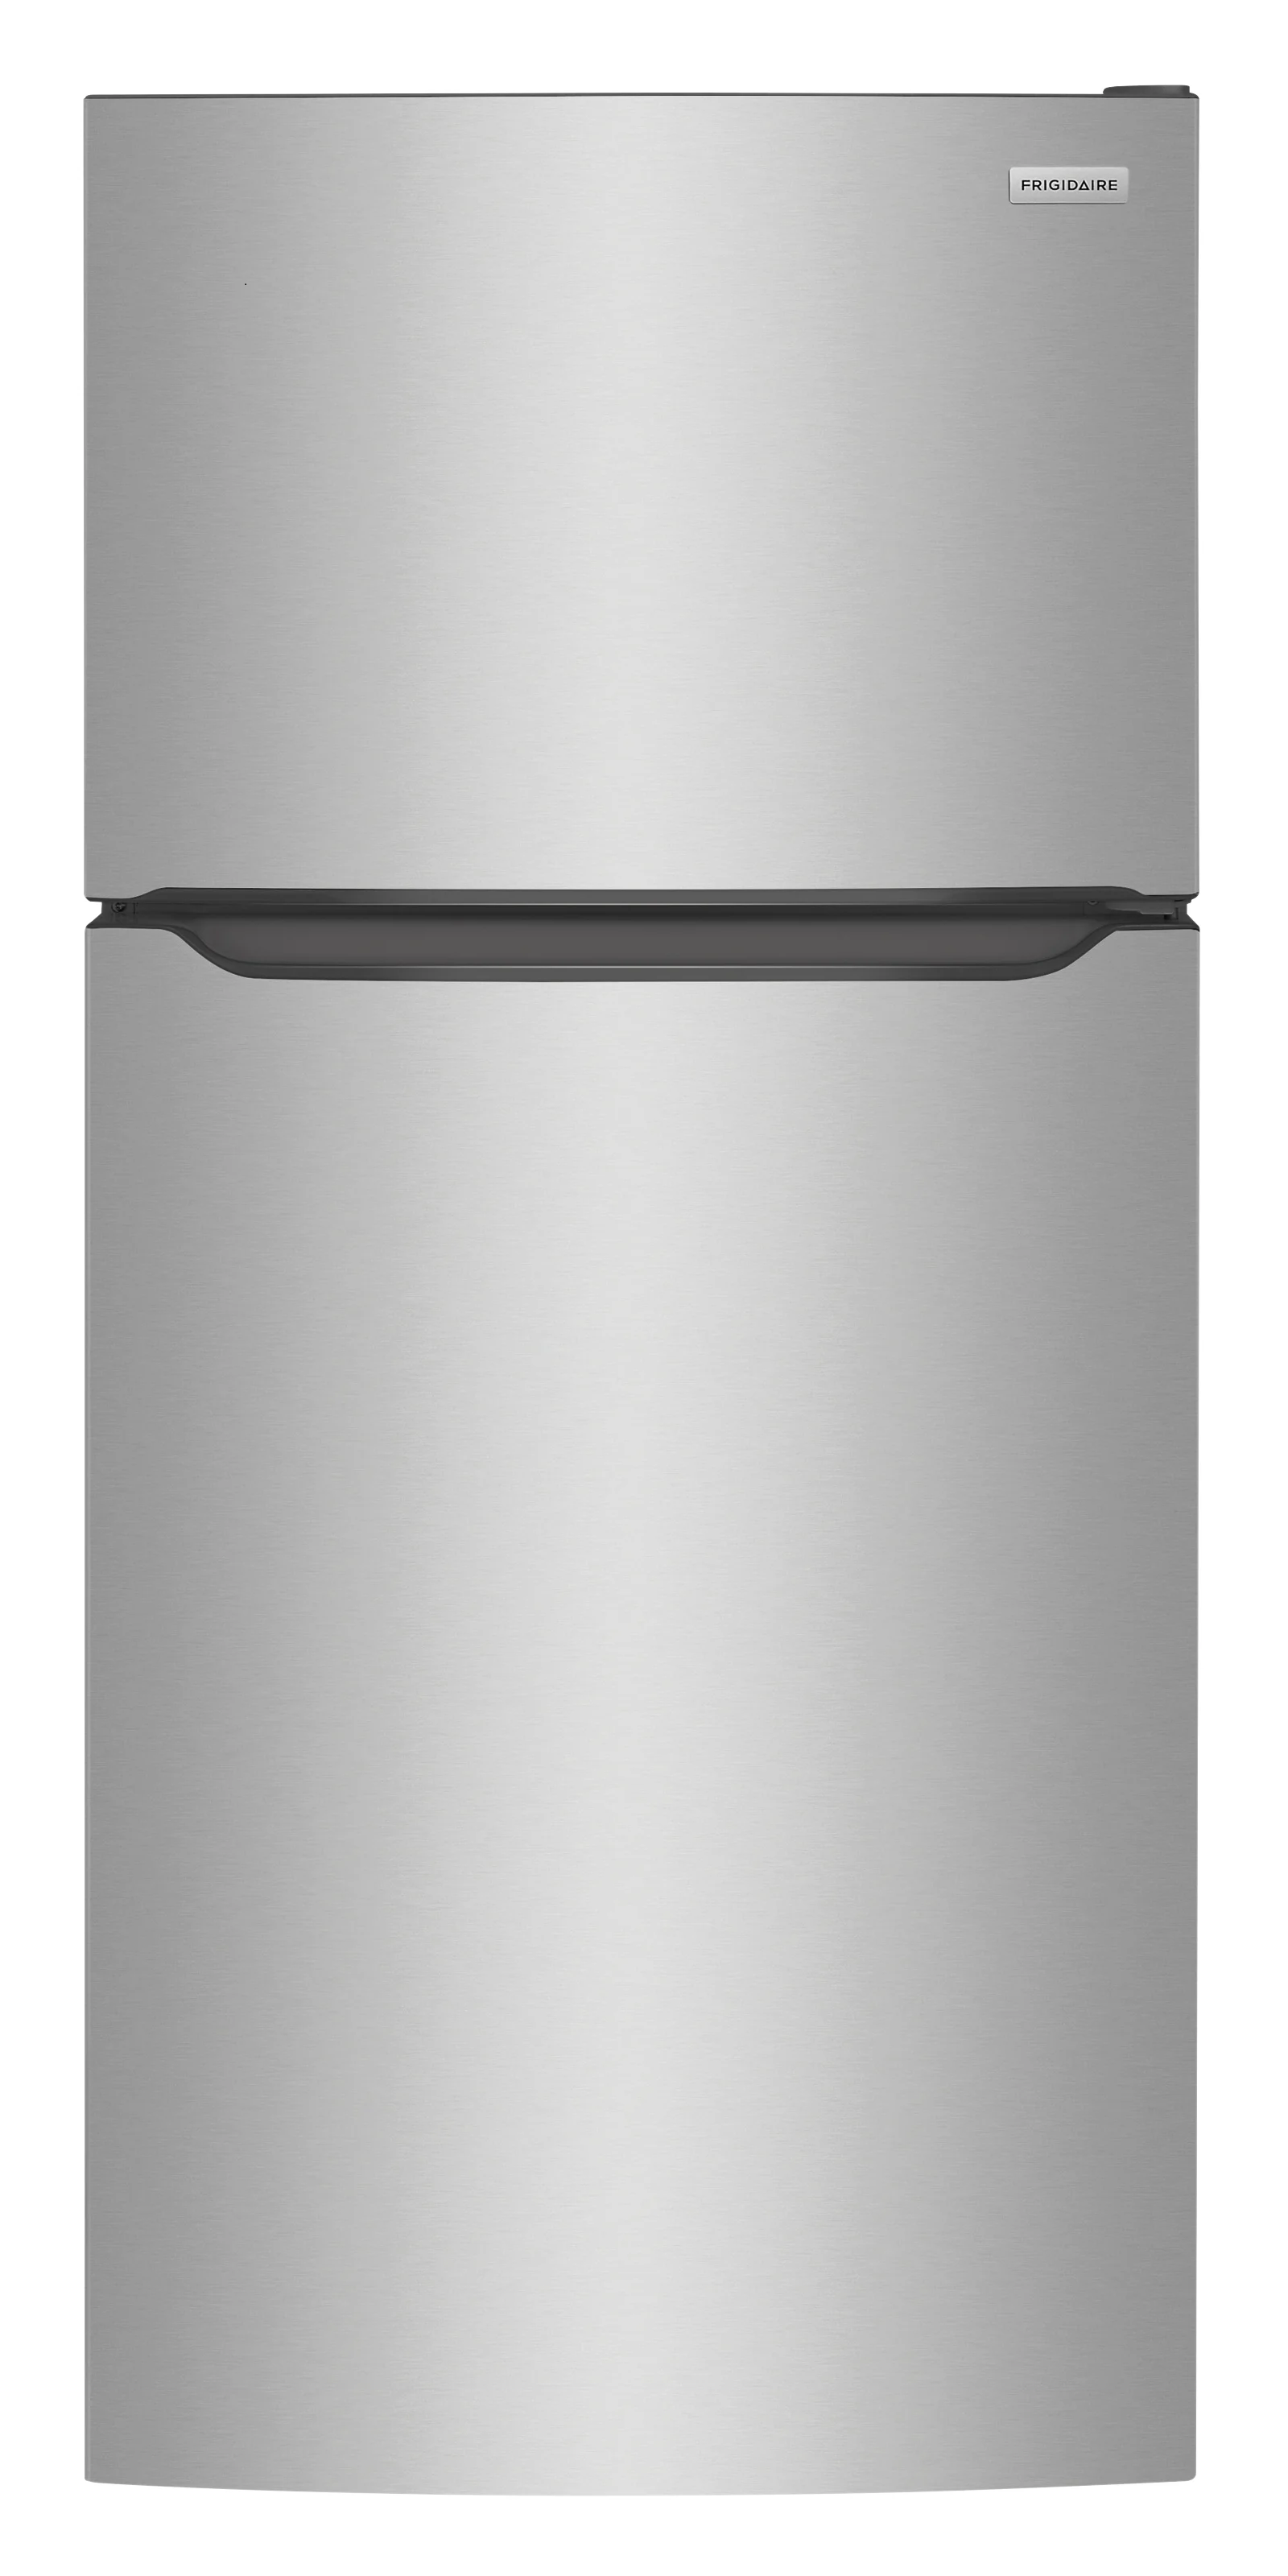 A top freezer refrigerator 